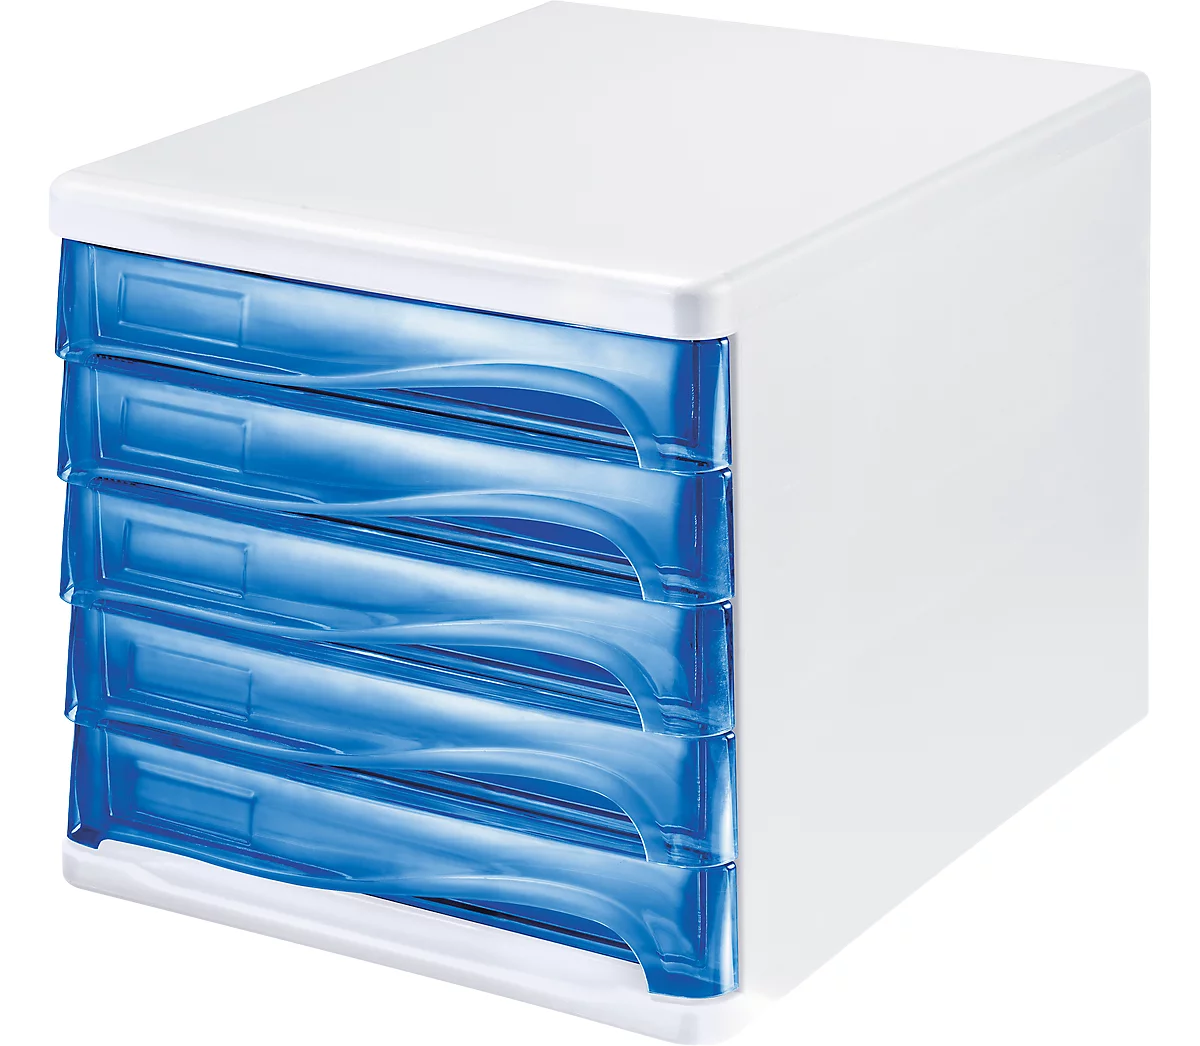 Schubladenbox helit, 5 Schübe, DIN A4, B 265 x H 250 x T 340 mm, Polypropylen, Gehäuse weiß/Schublade blau transparent